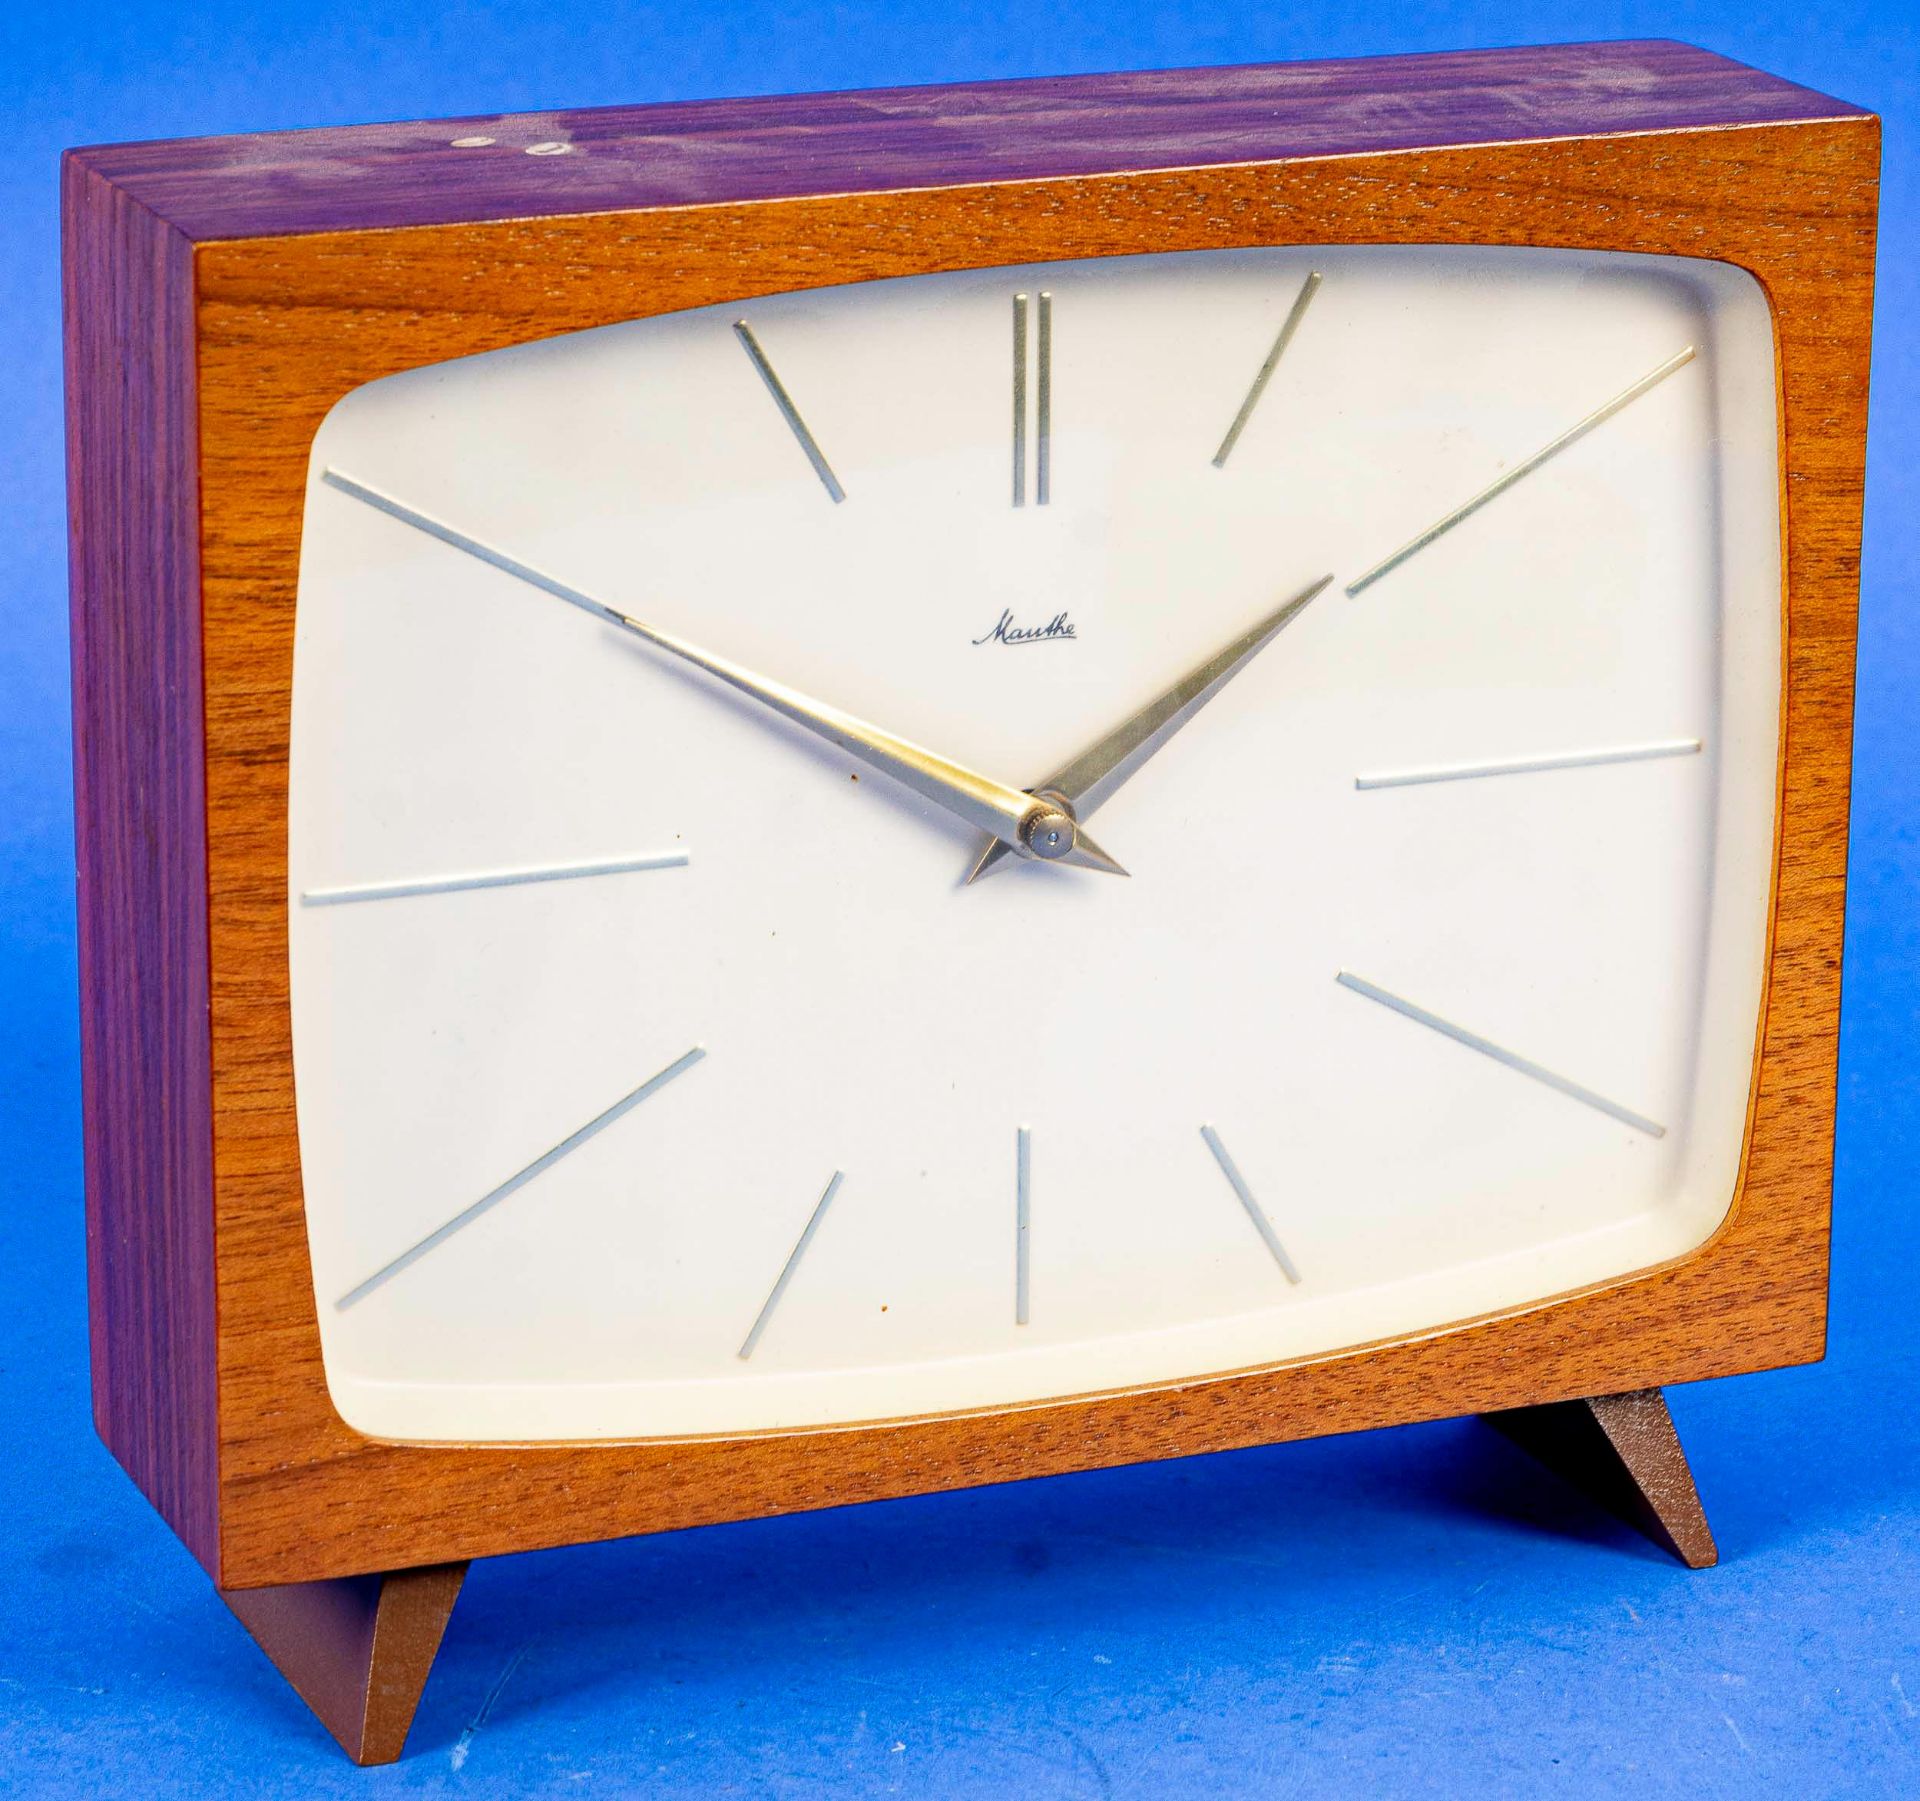 Ältere Buffet Uhr der Marke "Mauthe", Deutschland der 1950er/60er Jahre. Ungeprüftes, mechanisches